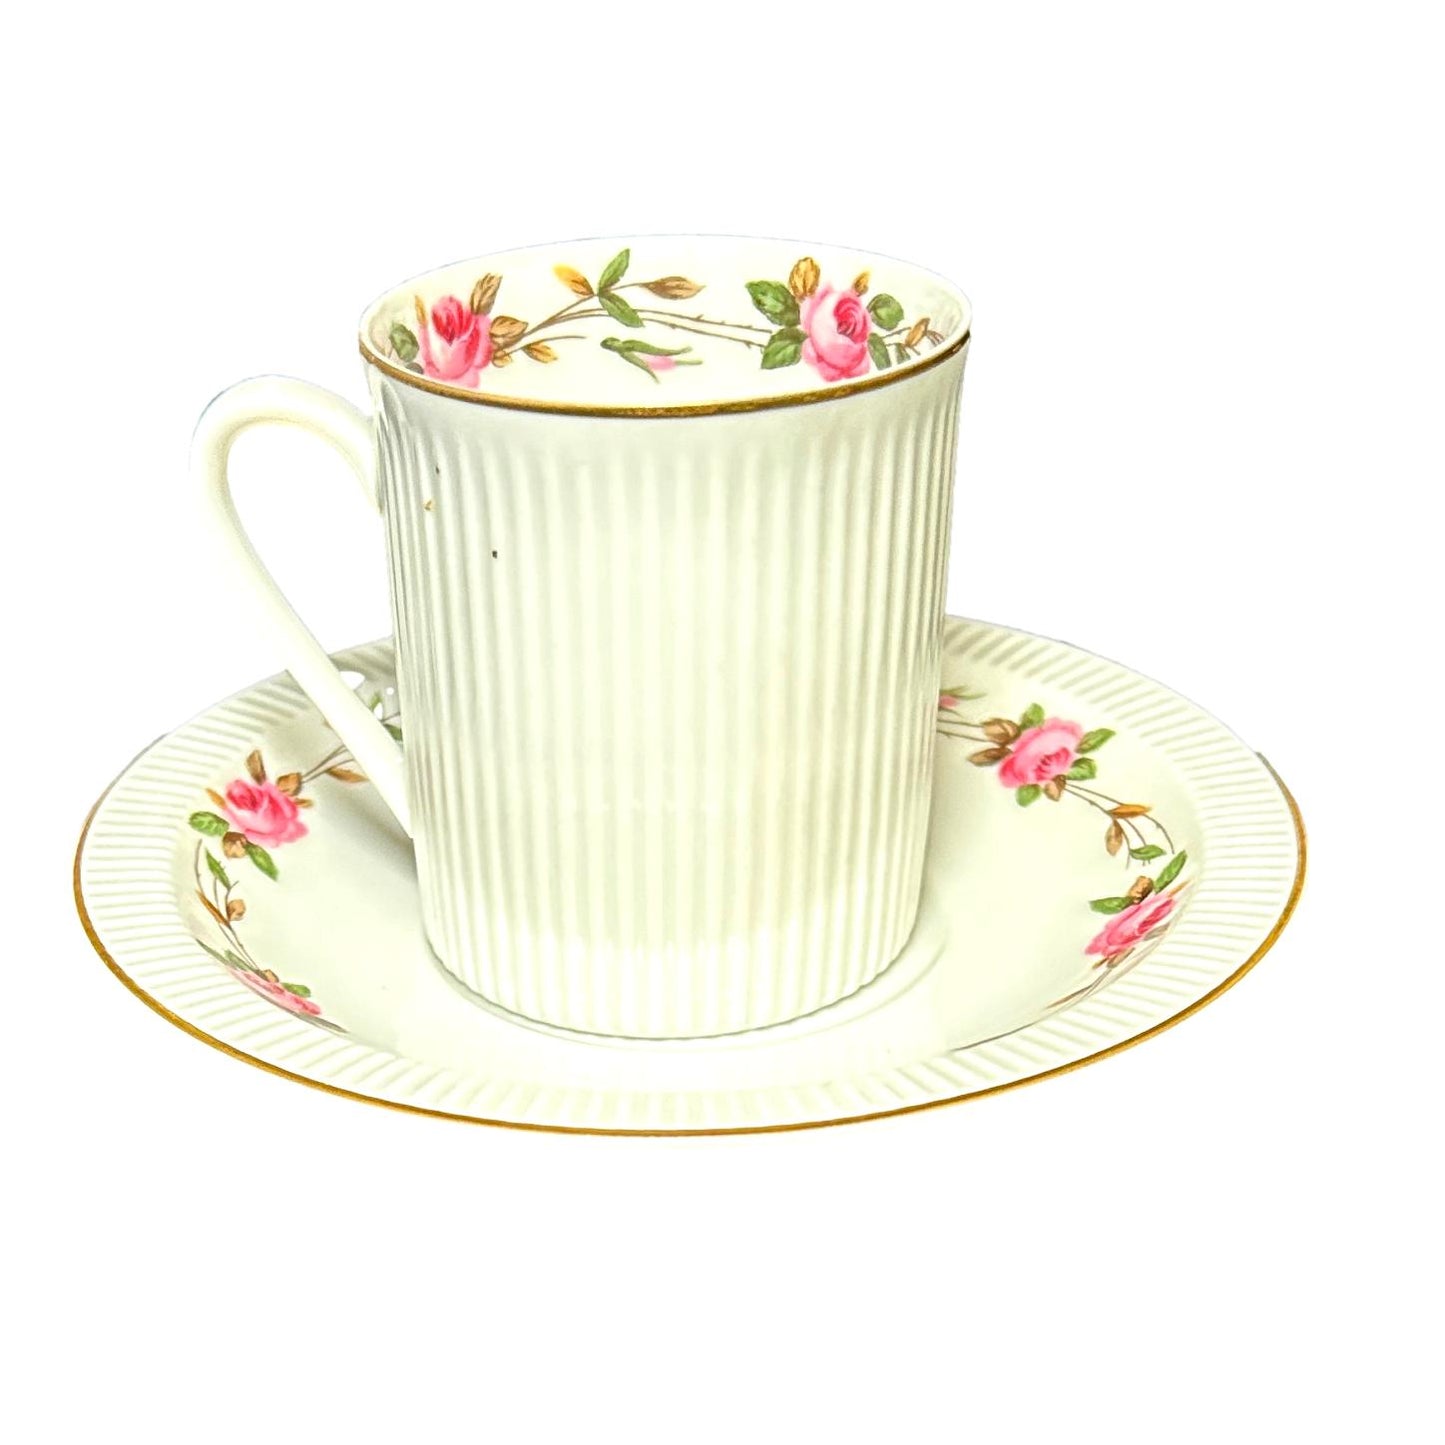 Moss Rose Tea Cup And Saucer